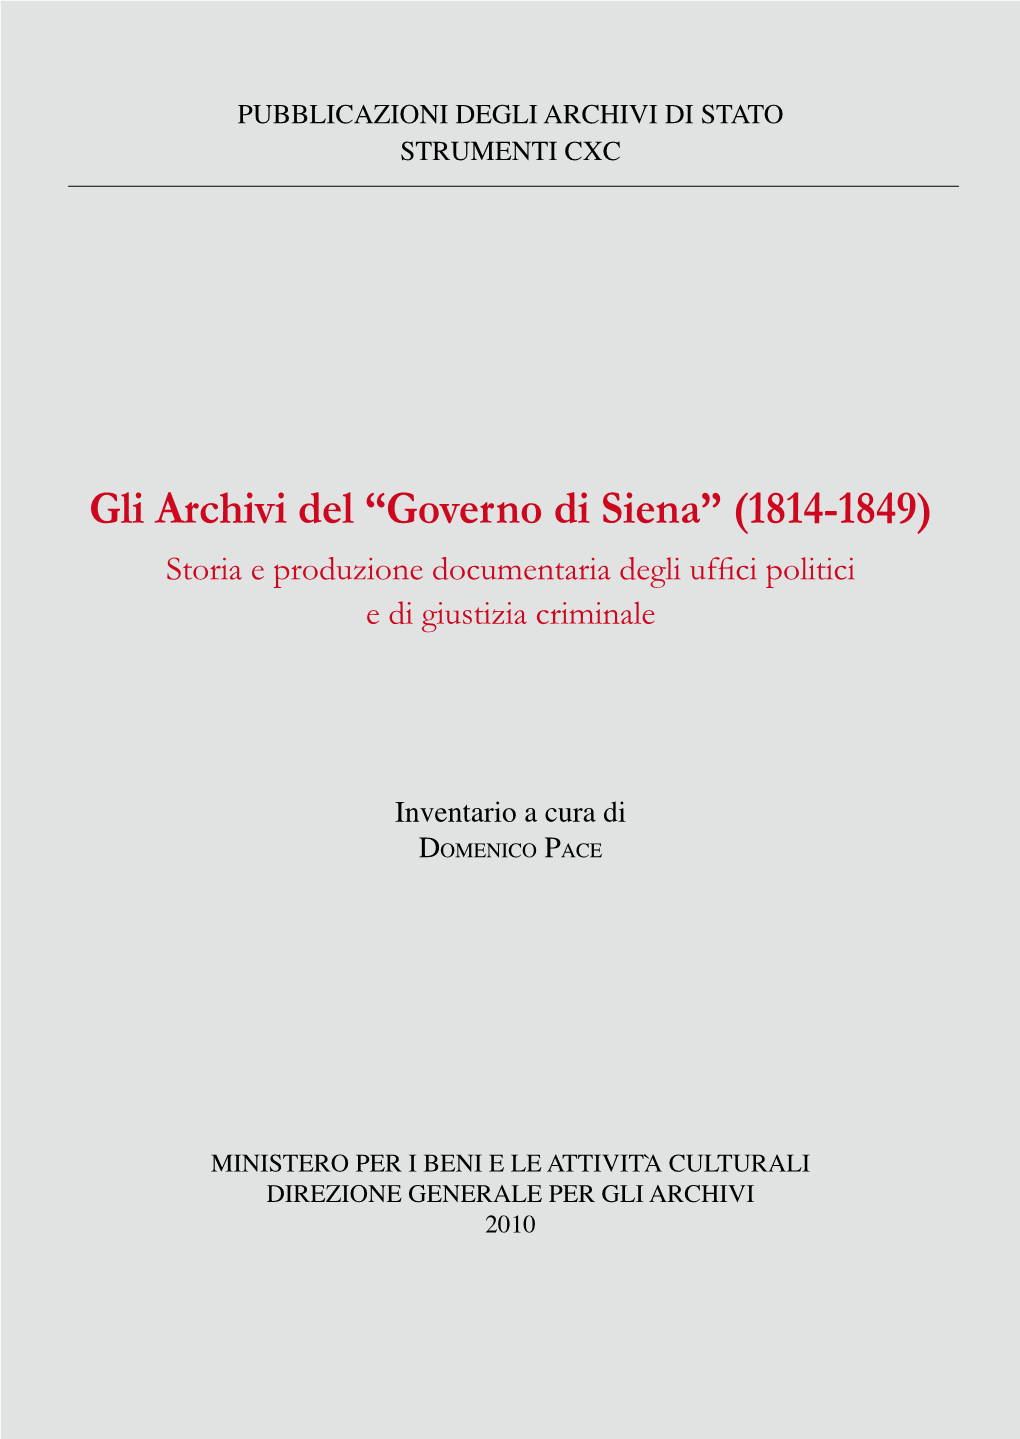 Gli Archivi Del “Governo Di Siena” (1814-1849). Storia E Produzione